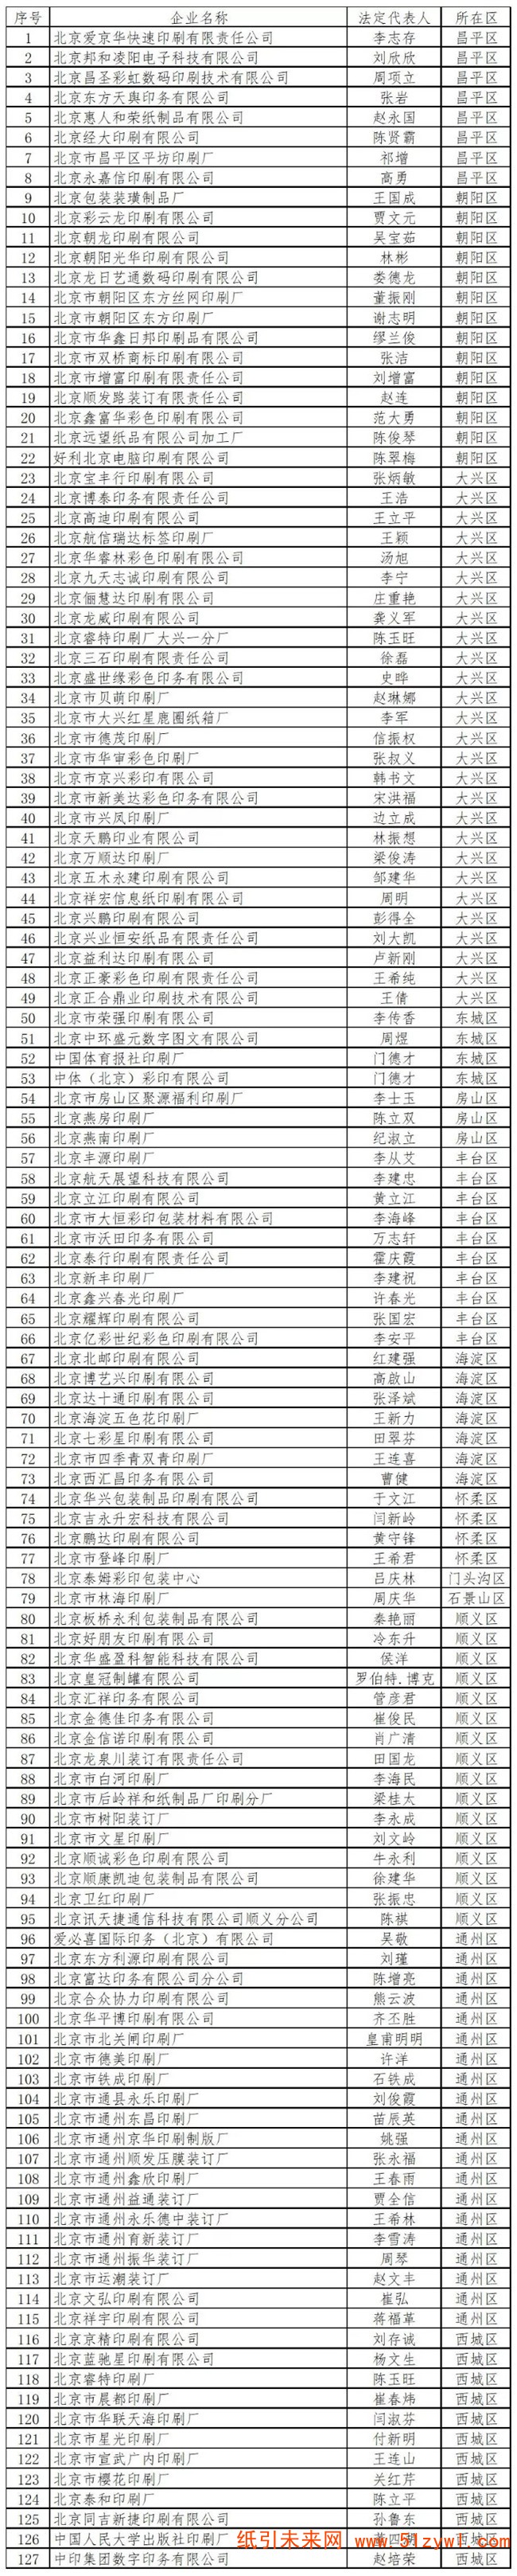 1-16 北京市新闻出版局发布注销127家印刷企业公告